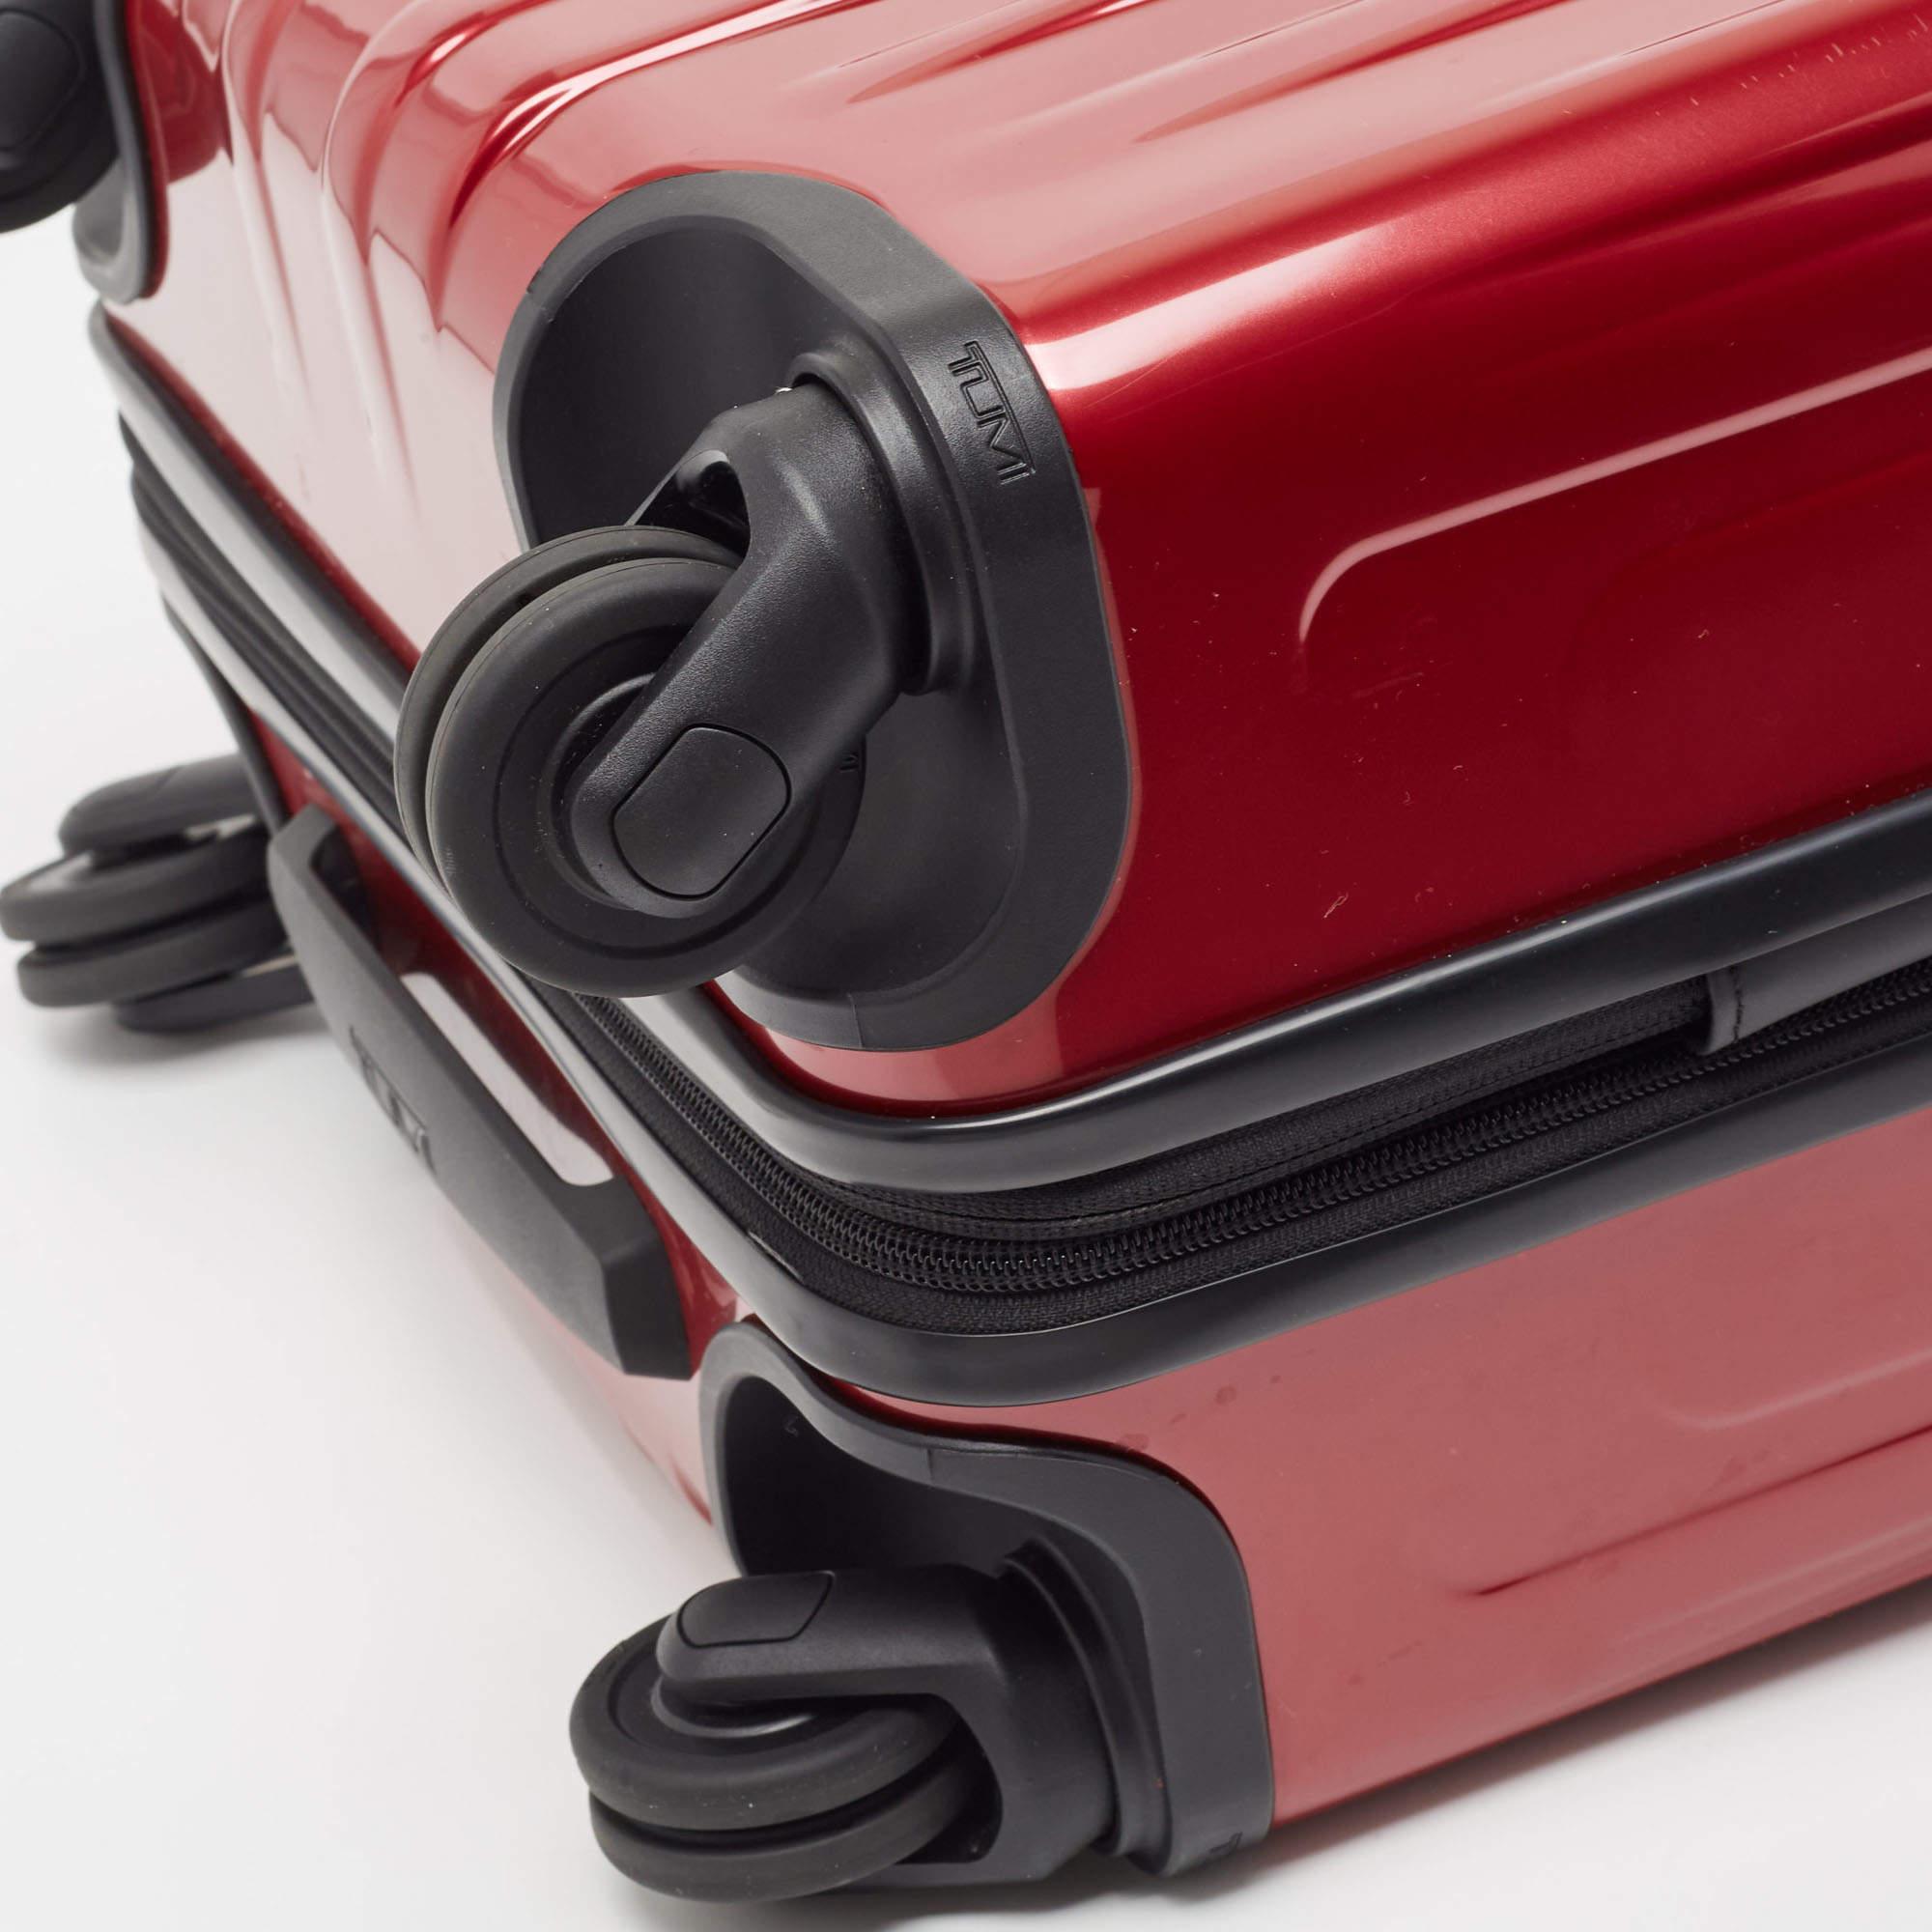 TUMI Red 4 Wheeled V4 International Expandable Carry On Luggage 2